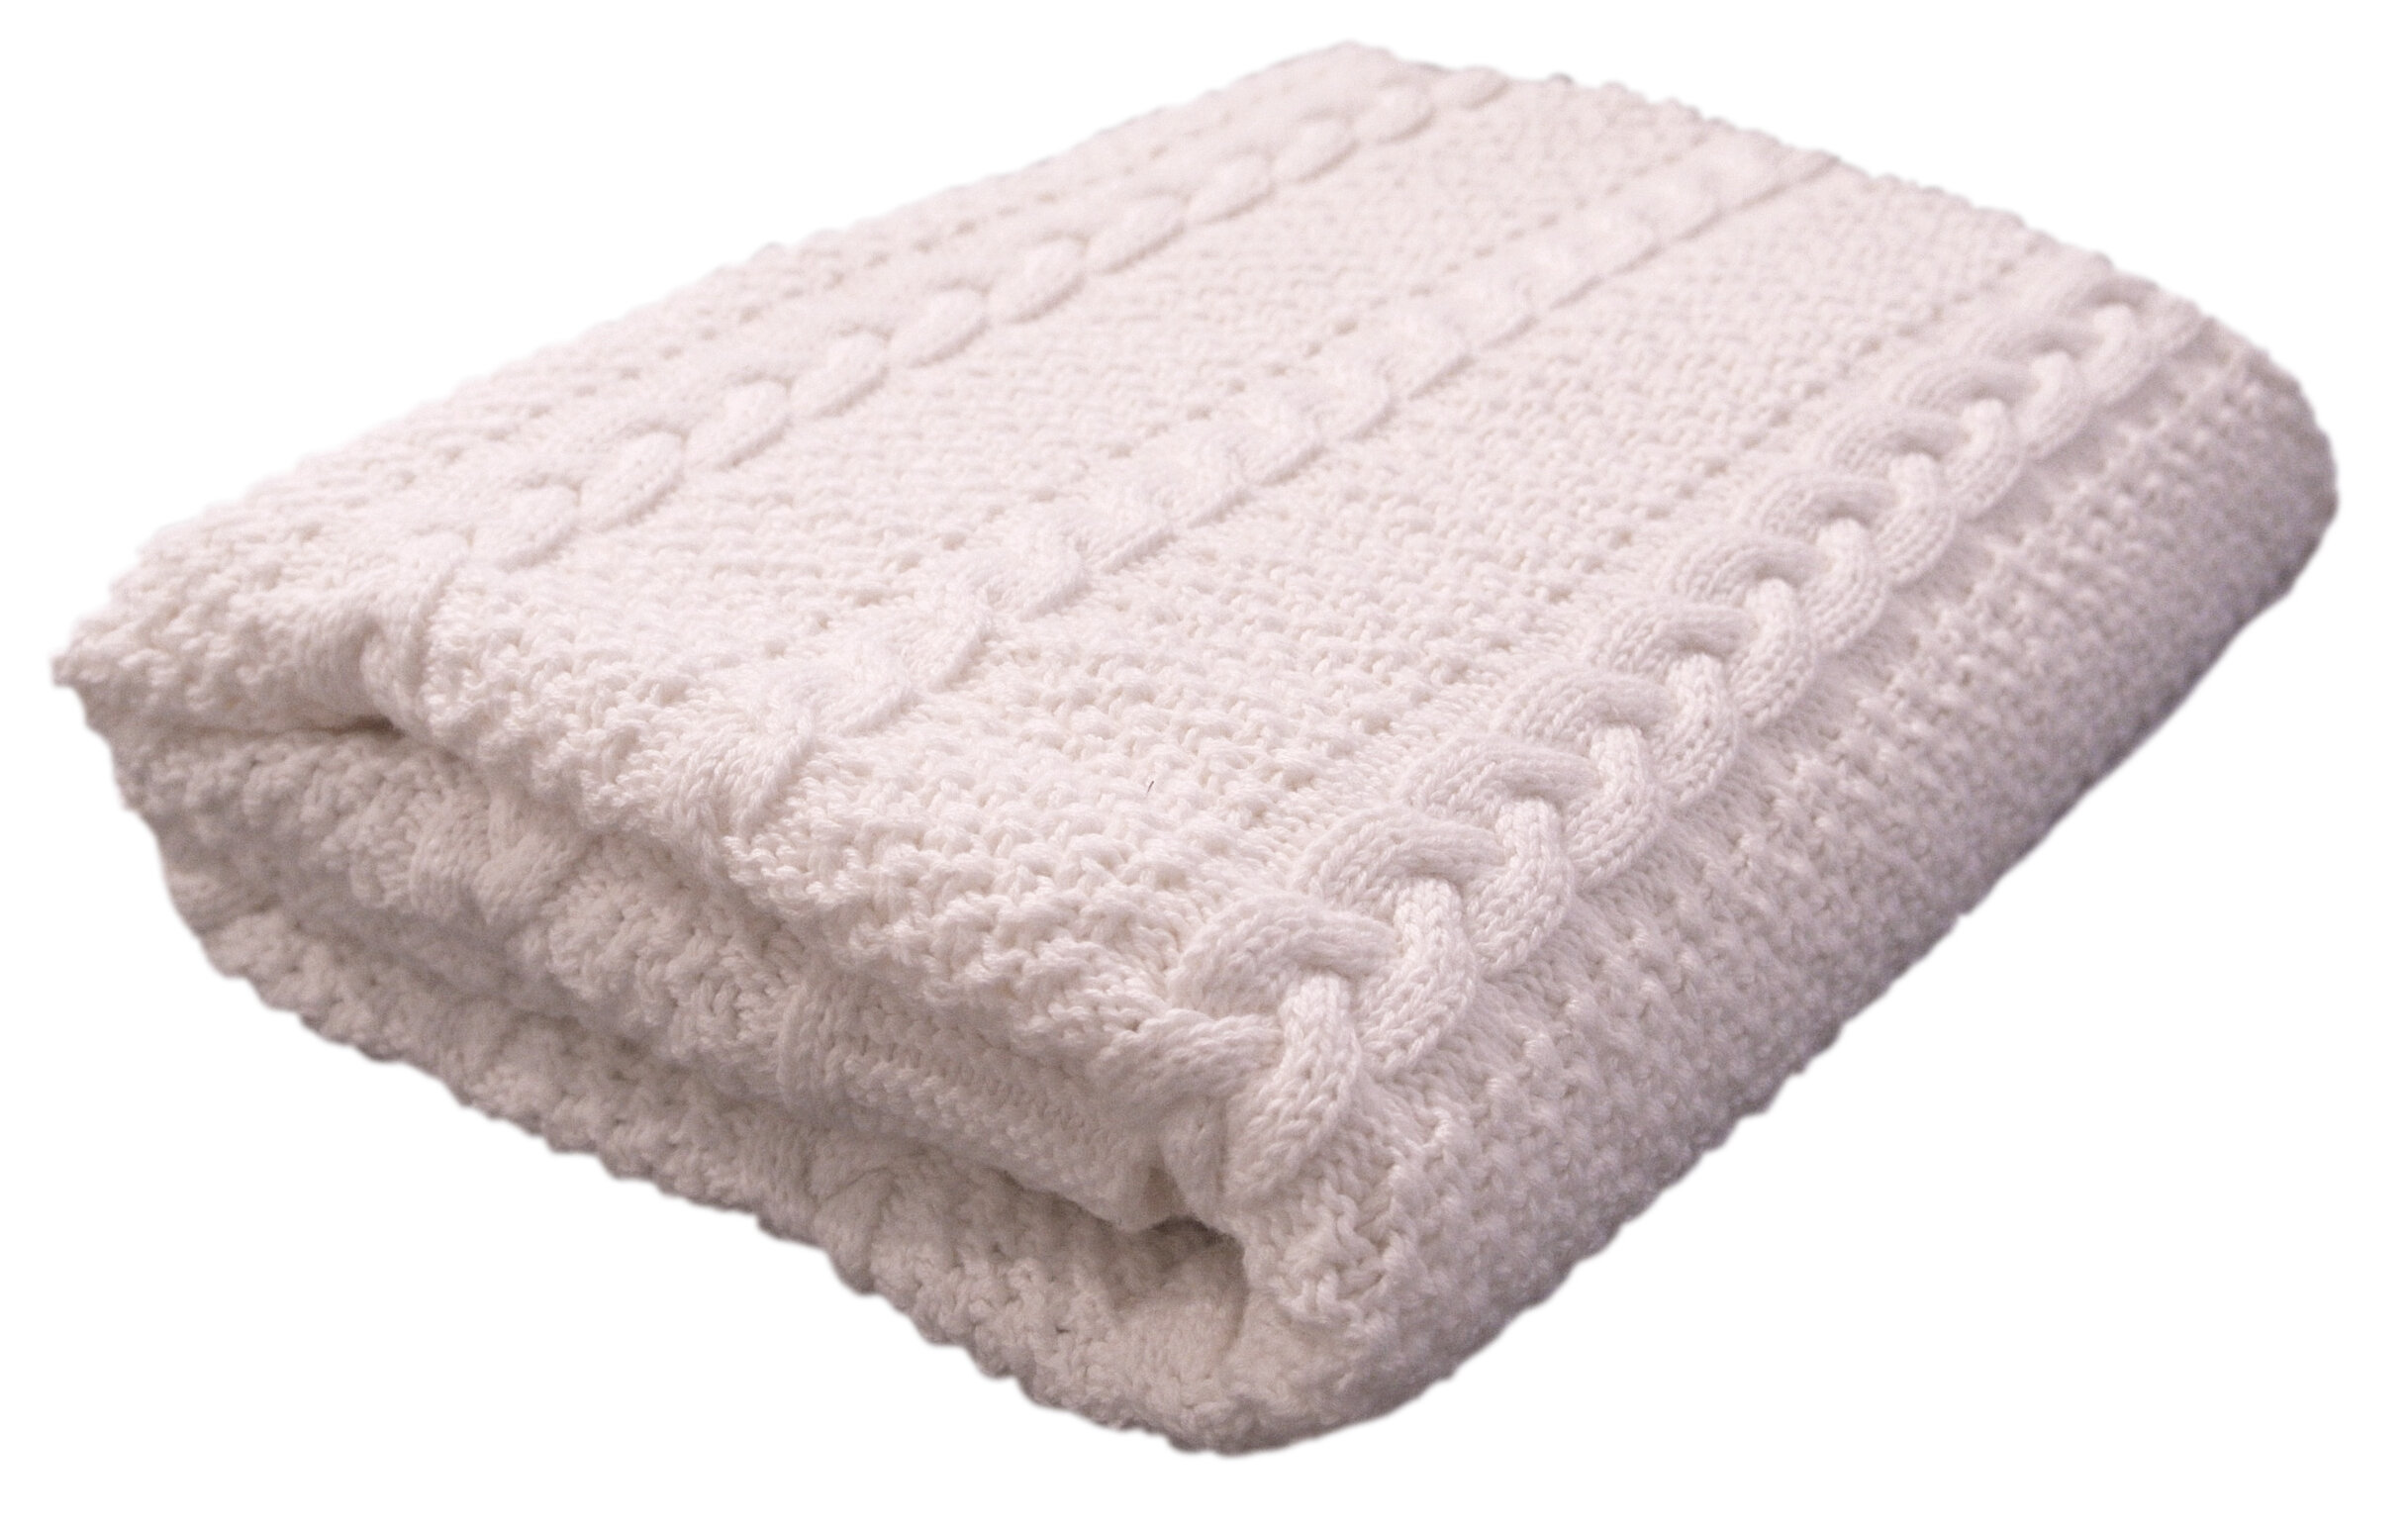 Harriet Bee Hillside Pure Cotton Baby Blanket Reviews Wayfair